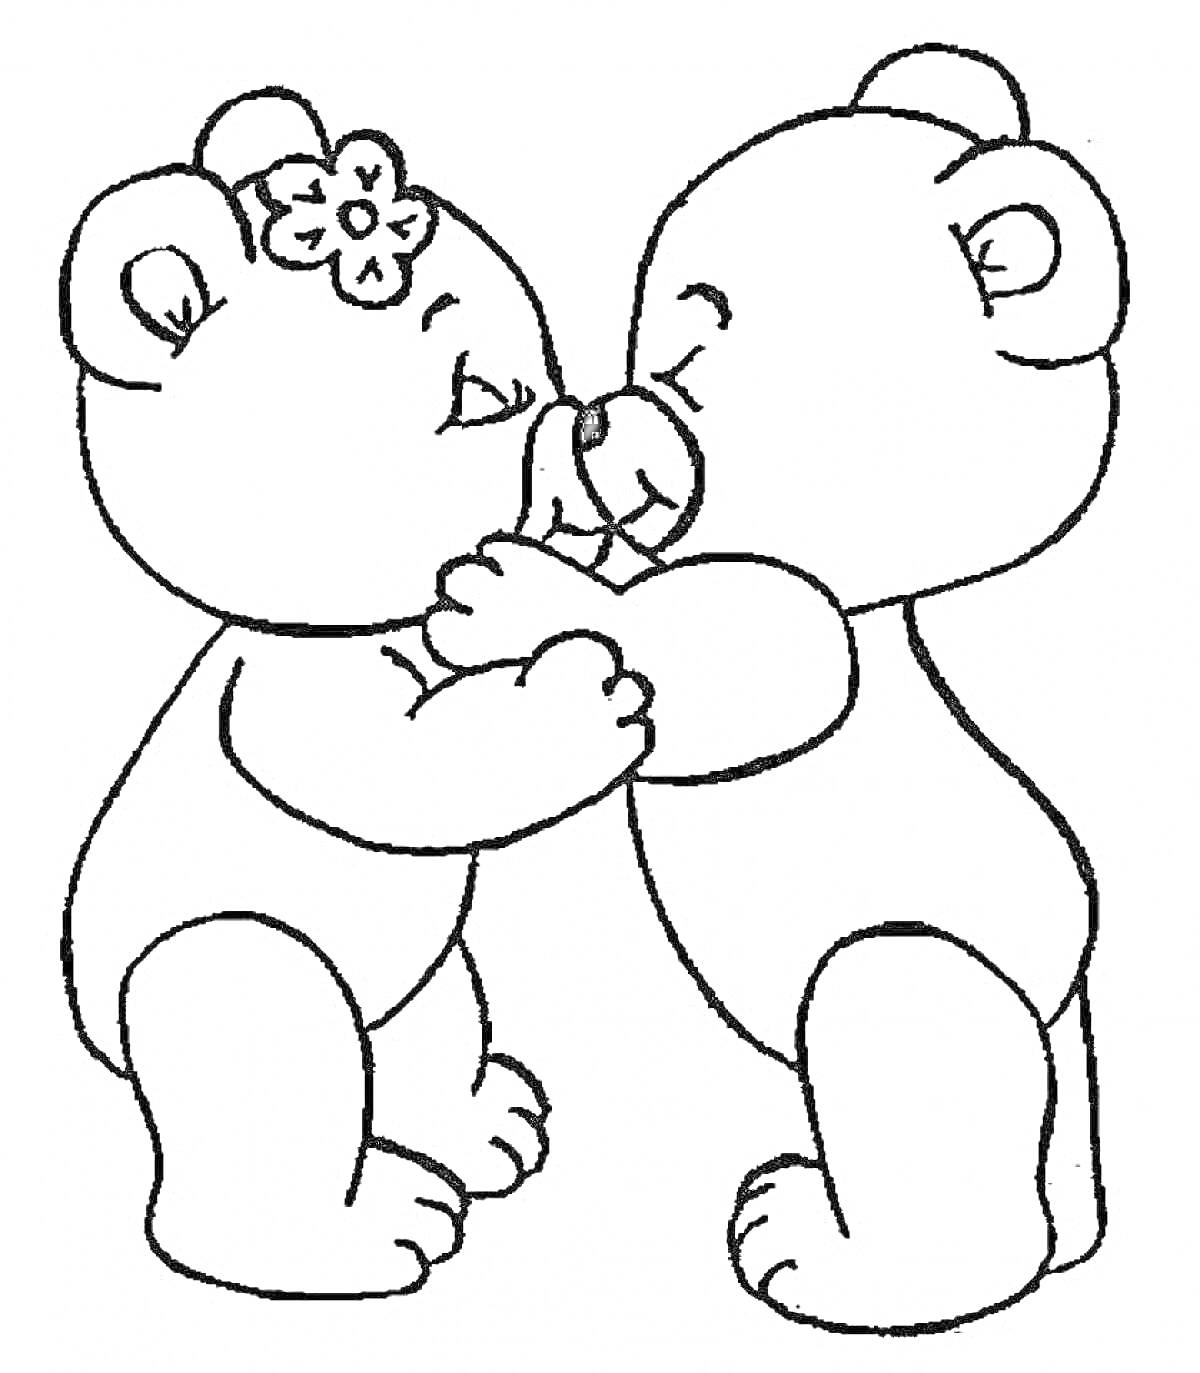 Раскраска Два медвежонка обнимаются, один медвежонок с цветком на голове